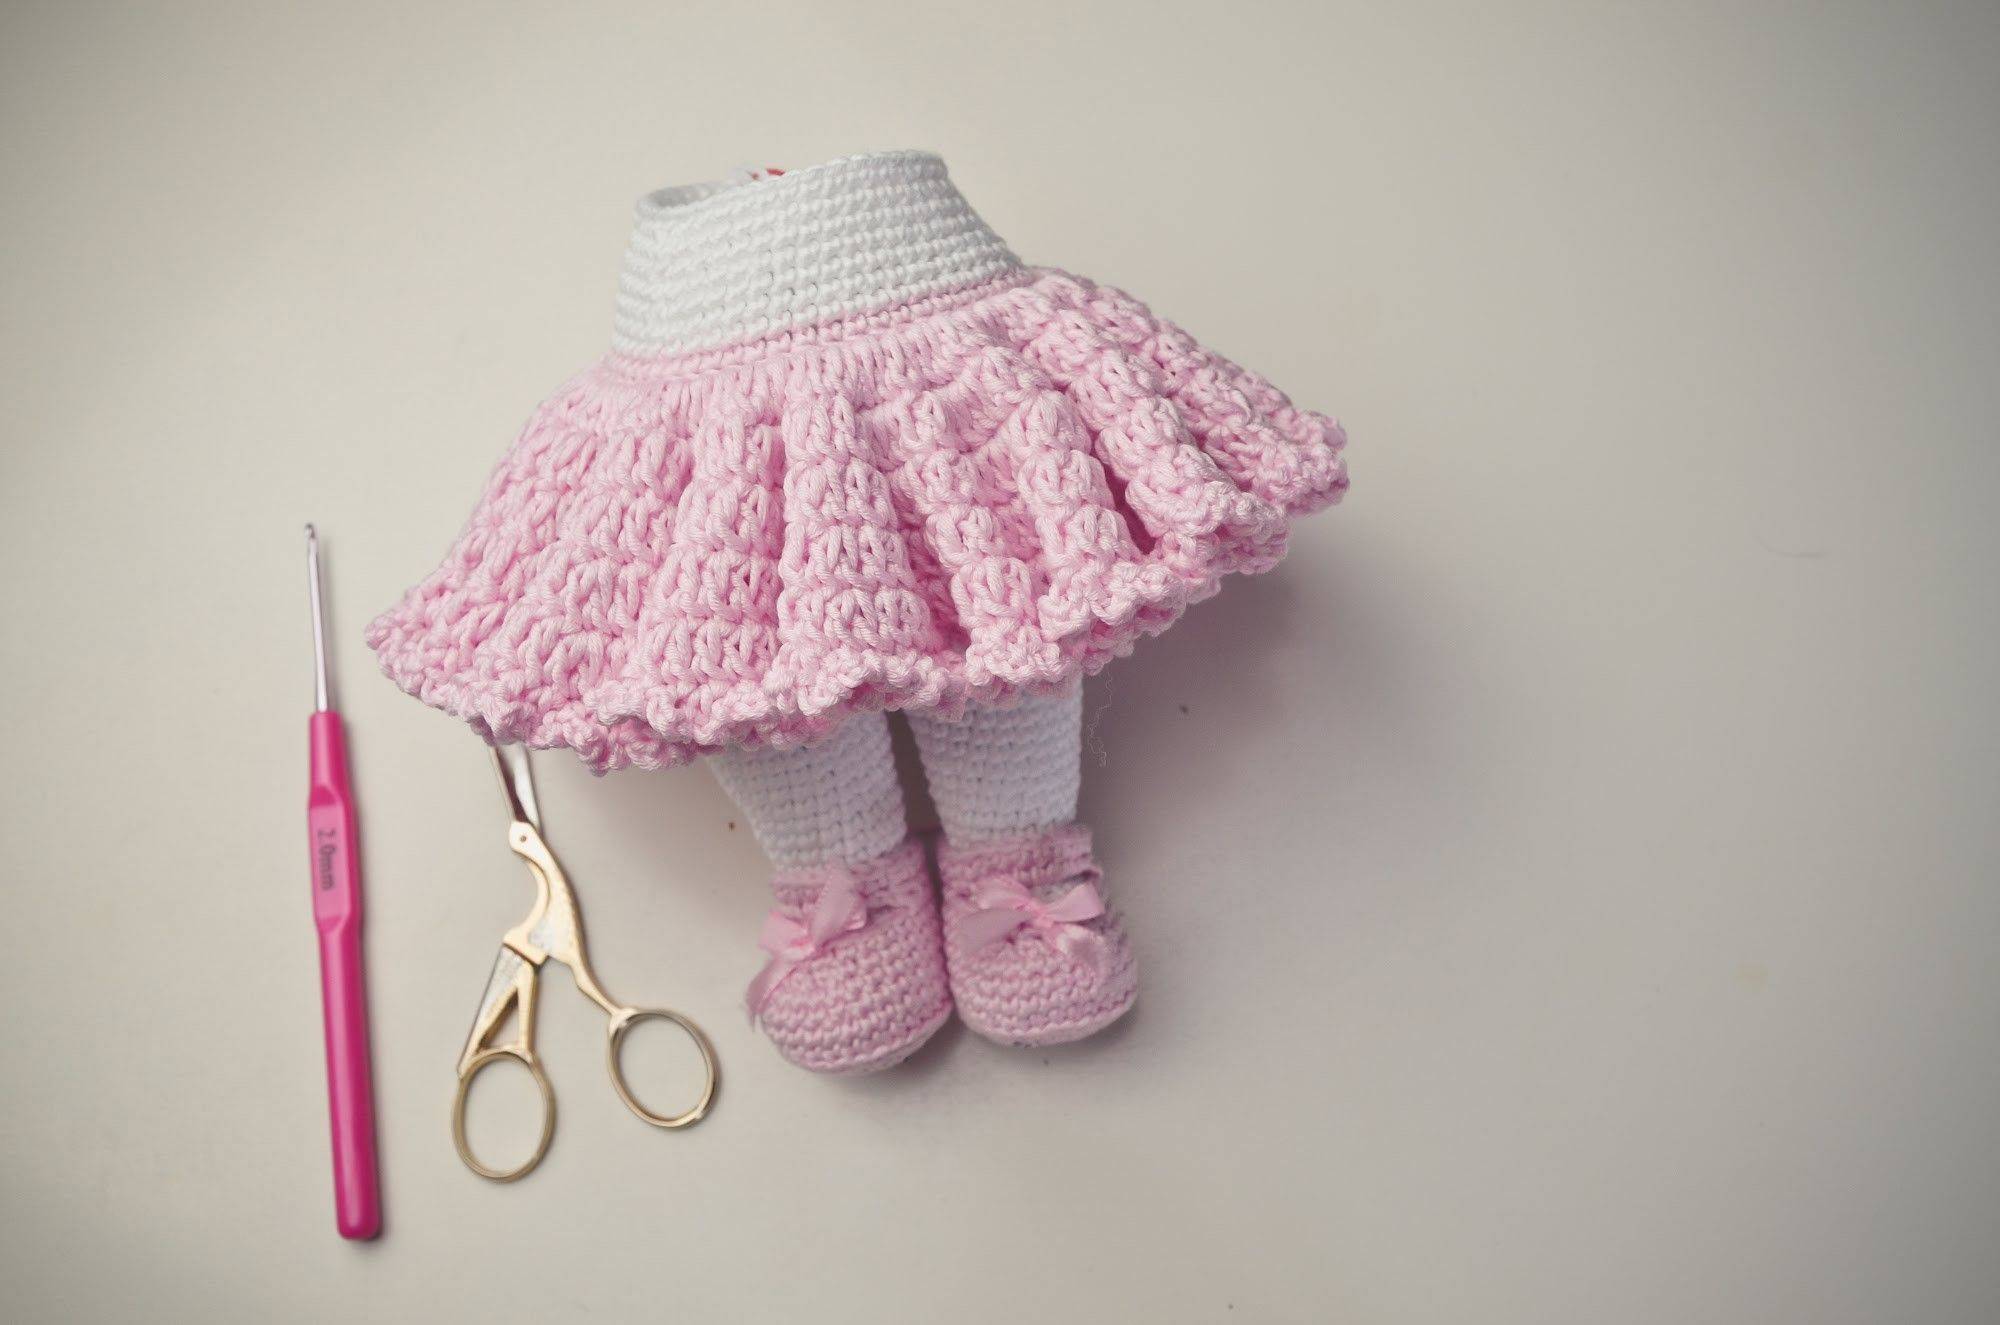 Мк по юбки связанной спицами (барби и не только) - гардероб для куклы - страна мам